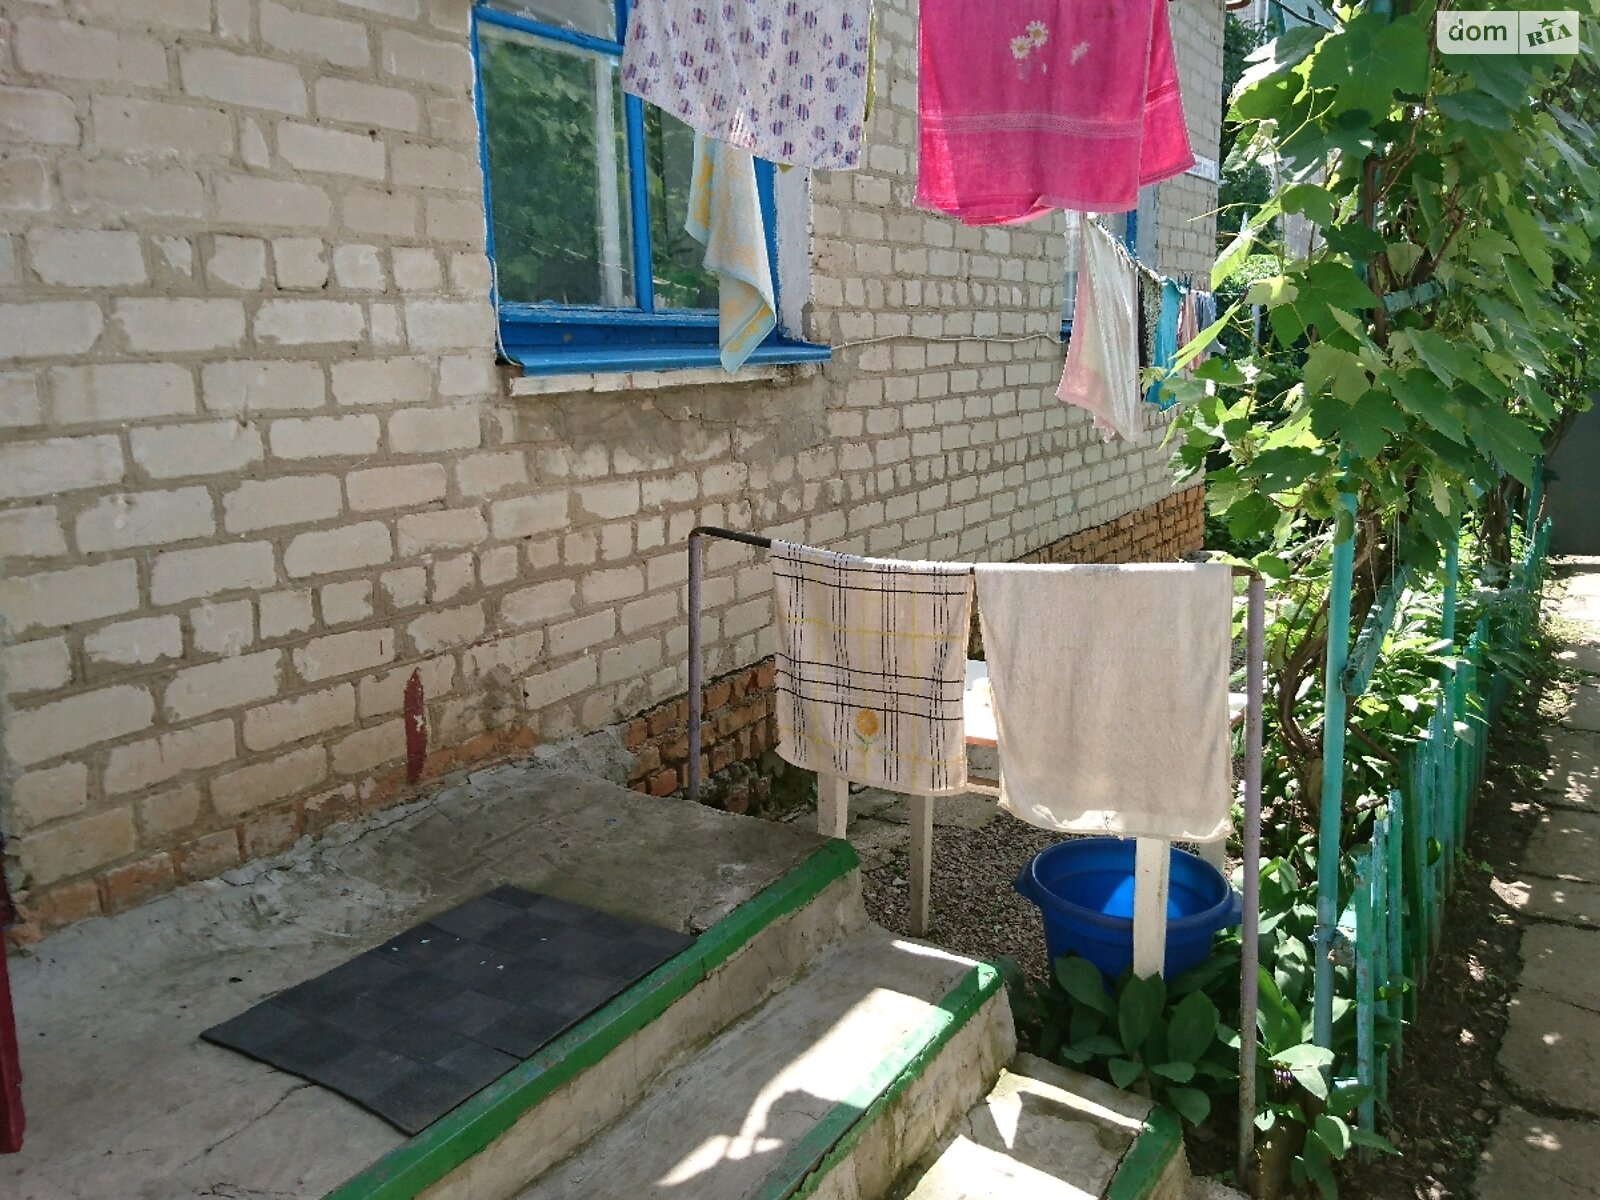 Продажа части дома в Бердянске, Матвеева, район АКЗ, 3 комнаты фото 1